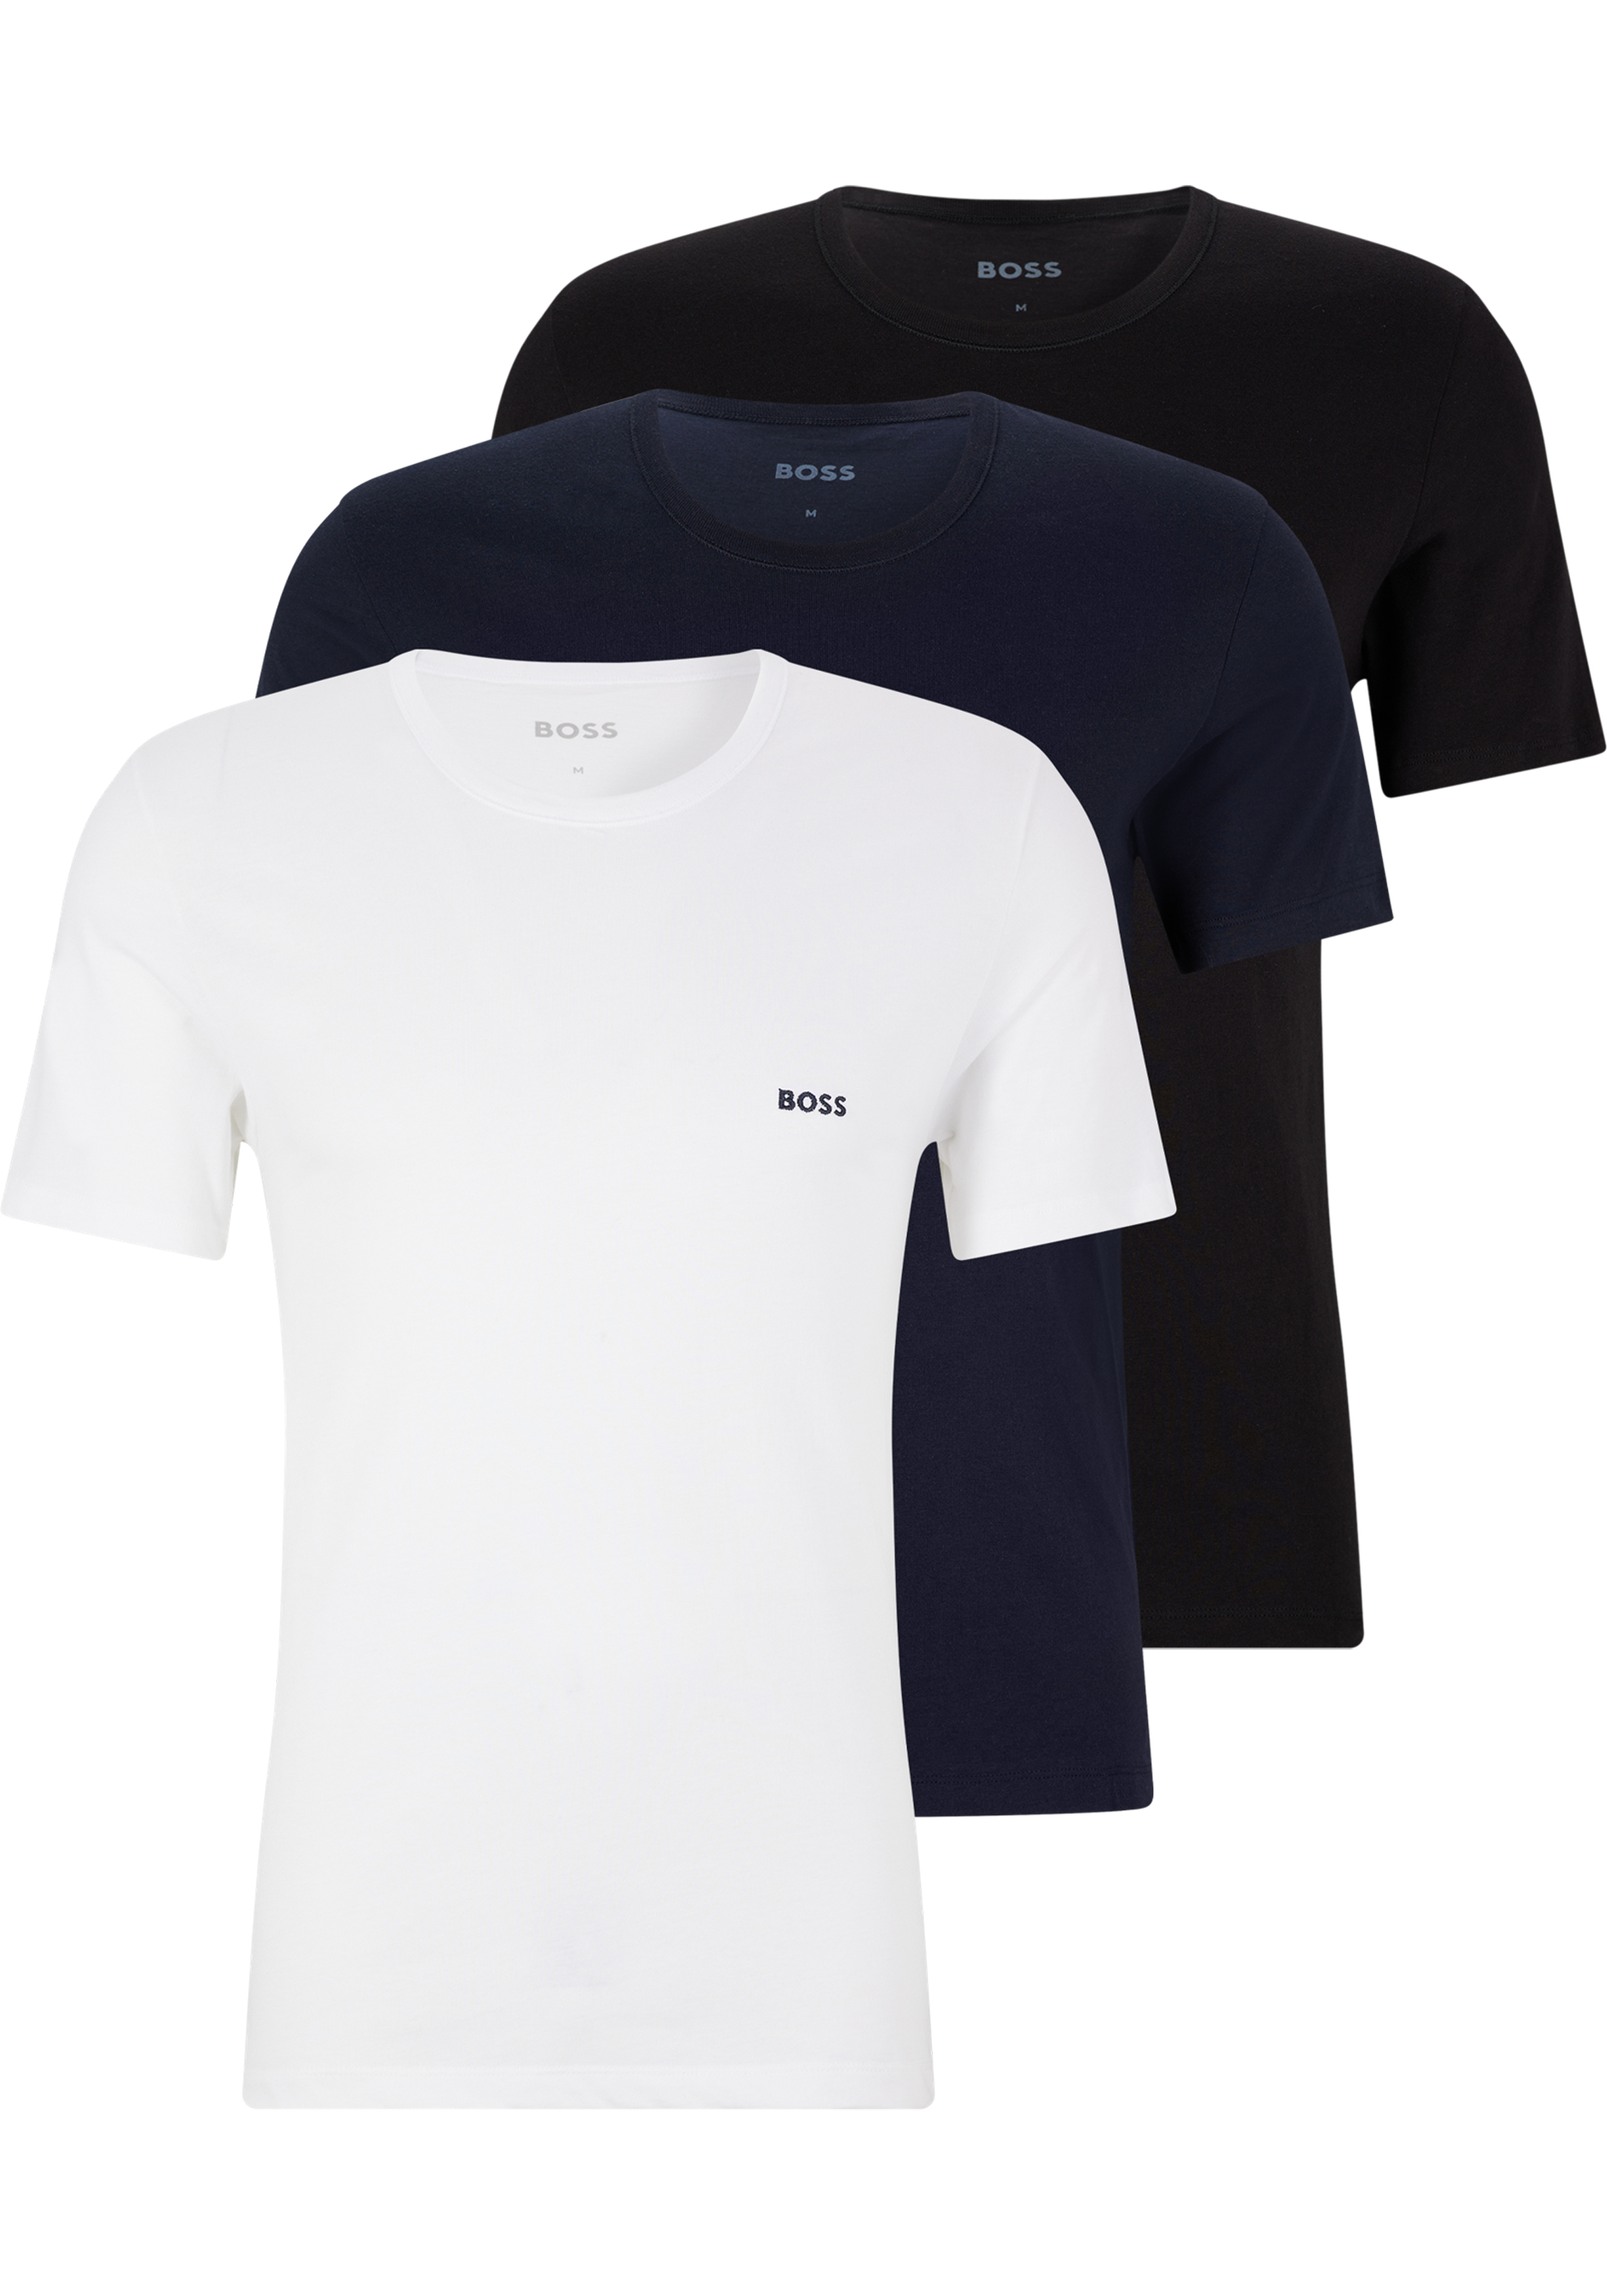 ondernemer stof in de ogen gooien Premisse HUGO BOSS Classic T-shirts regular fit (3-pack), heren T-shirts O-hals,...  - Shop de nieuwste voorjaarsmode